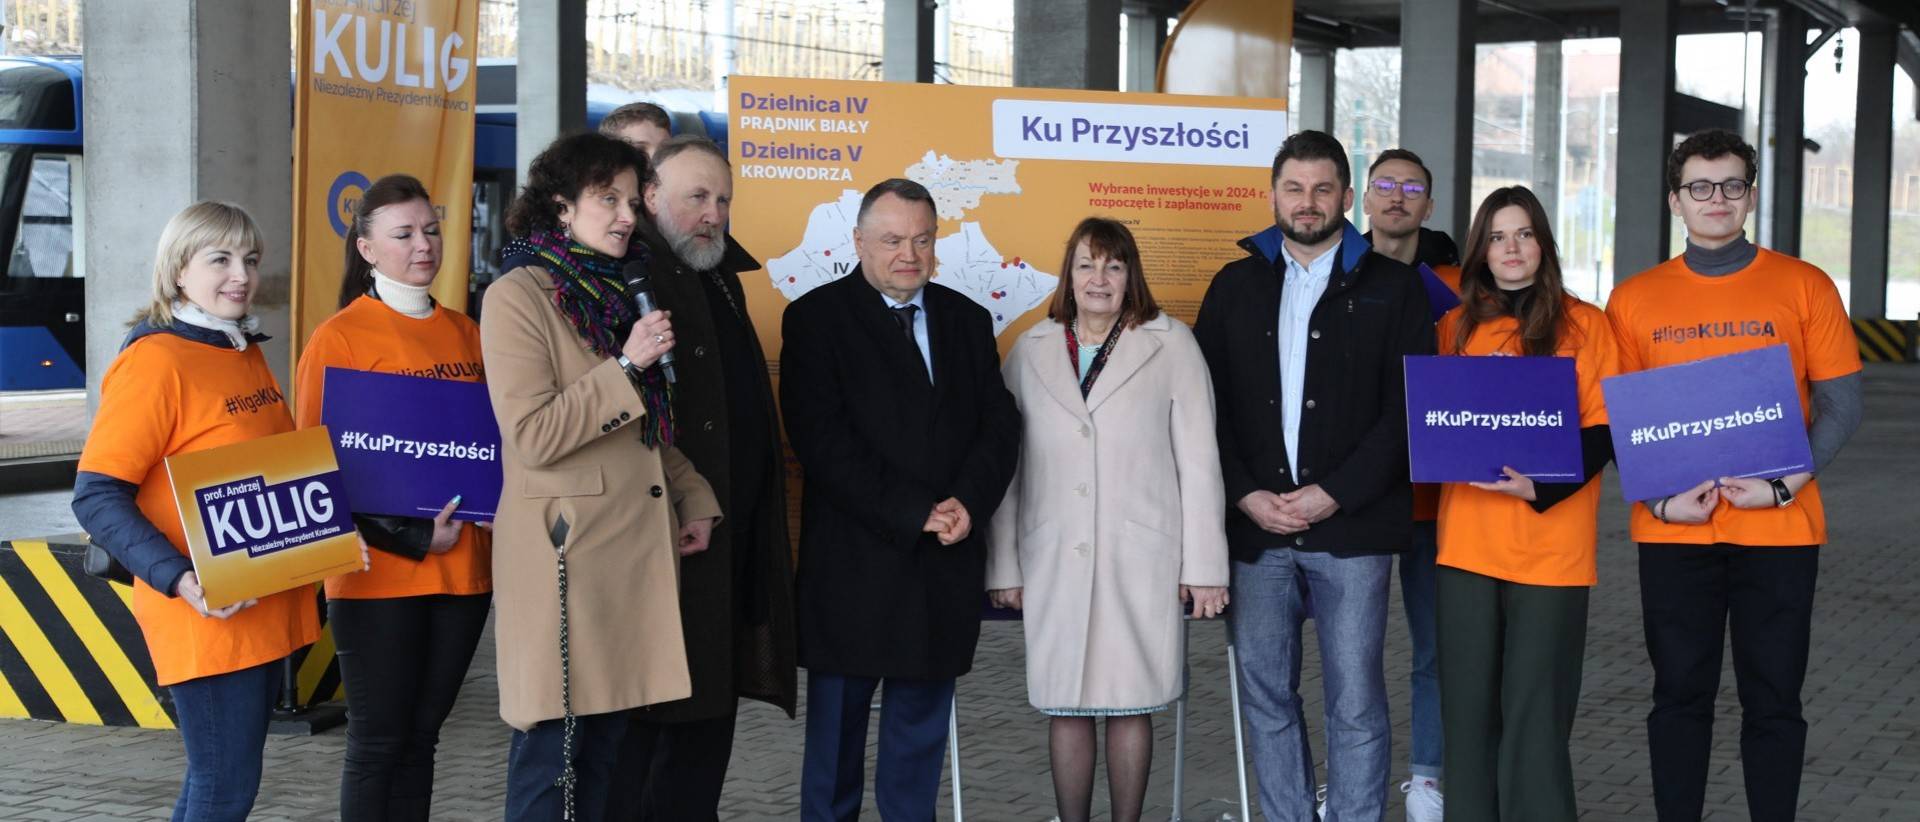 Andrzej Kulig zapowiada „dopieszczanie” dzielnic i tramwaj na Azory